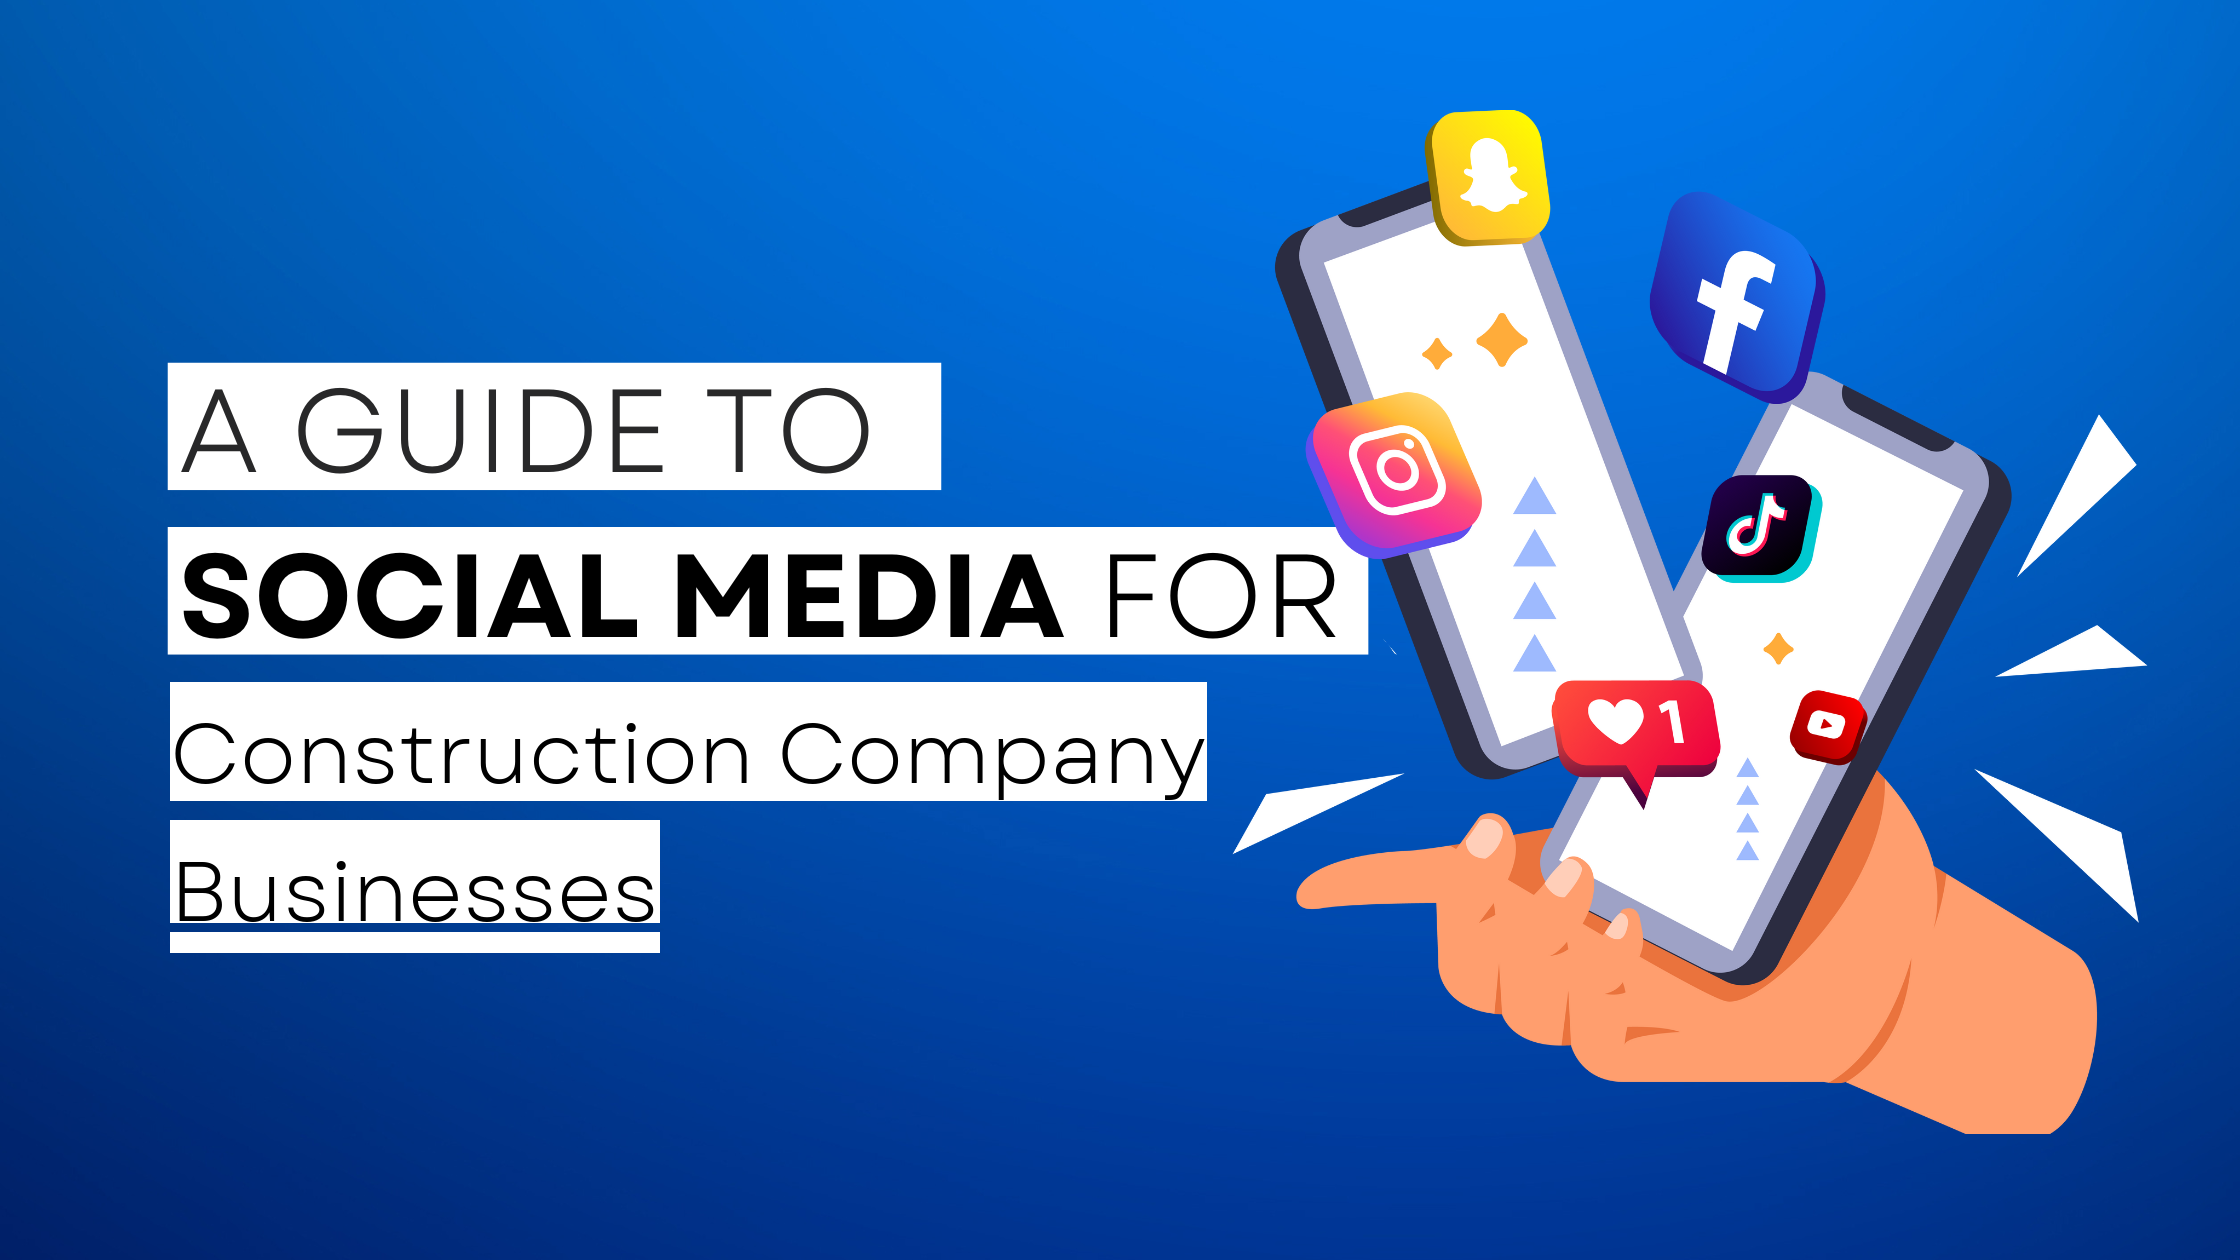 How to start Construction Company on social media